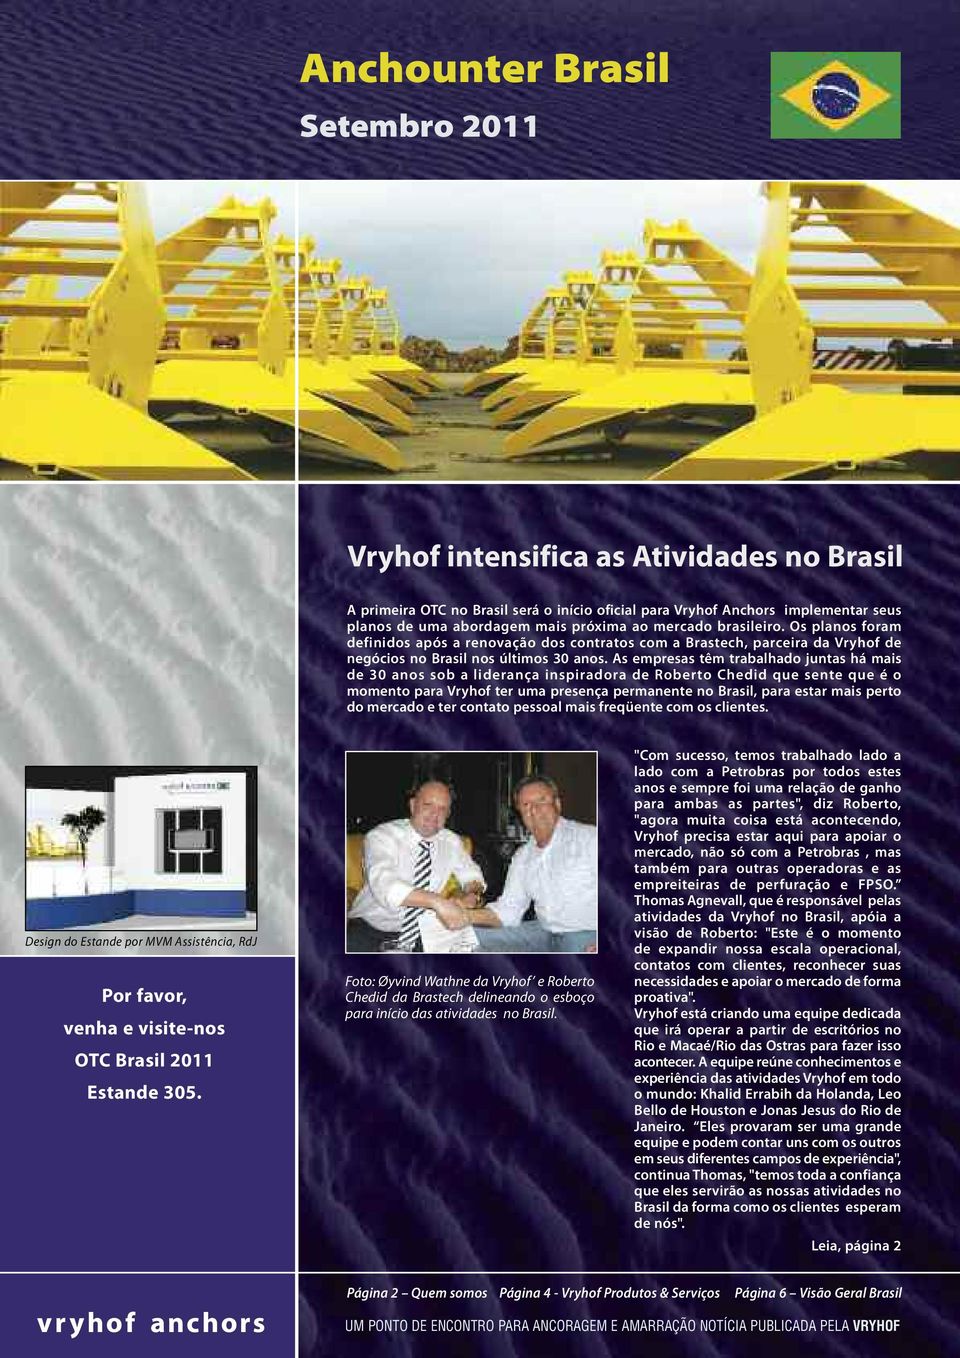 As empresas têm trabalhado juntas há mais de 30 anos sob a liderança inspiradora de Roberto Chedid que sente que é o momento para Vryhof ter uma presença permanente no Brasil, para estar mais perto